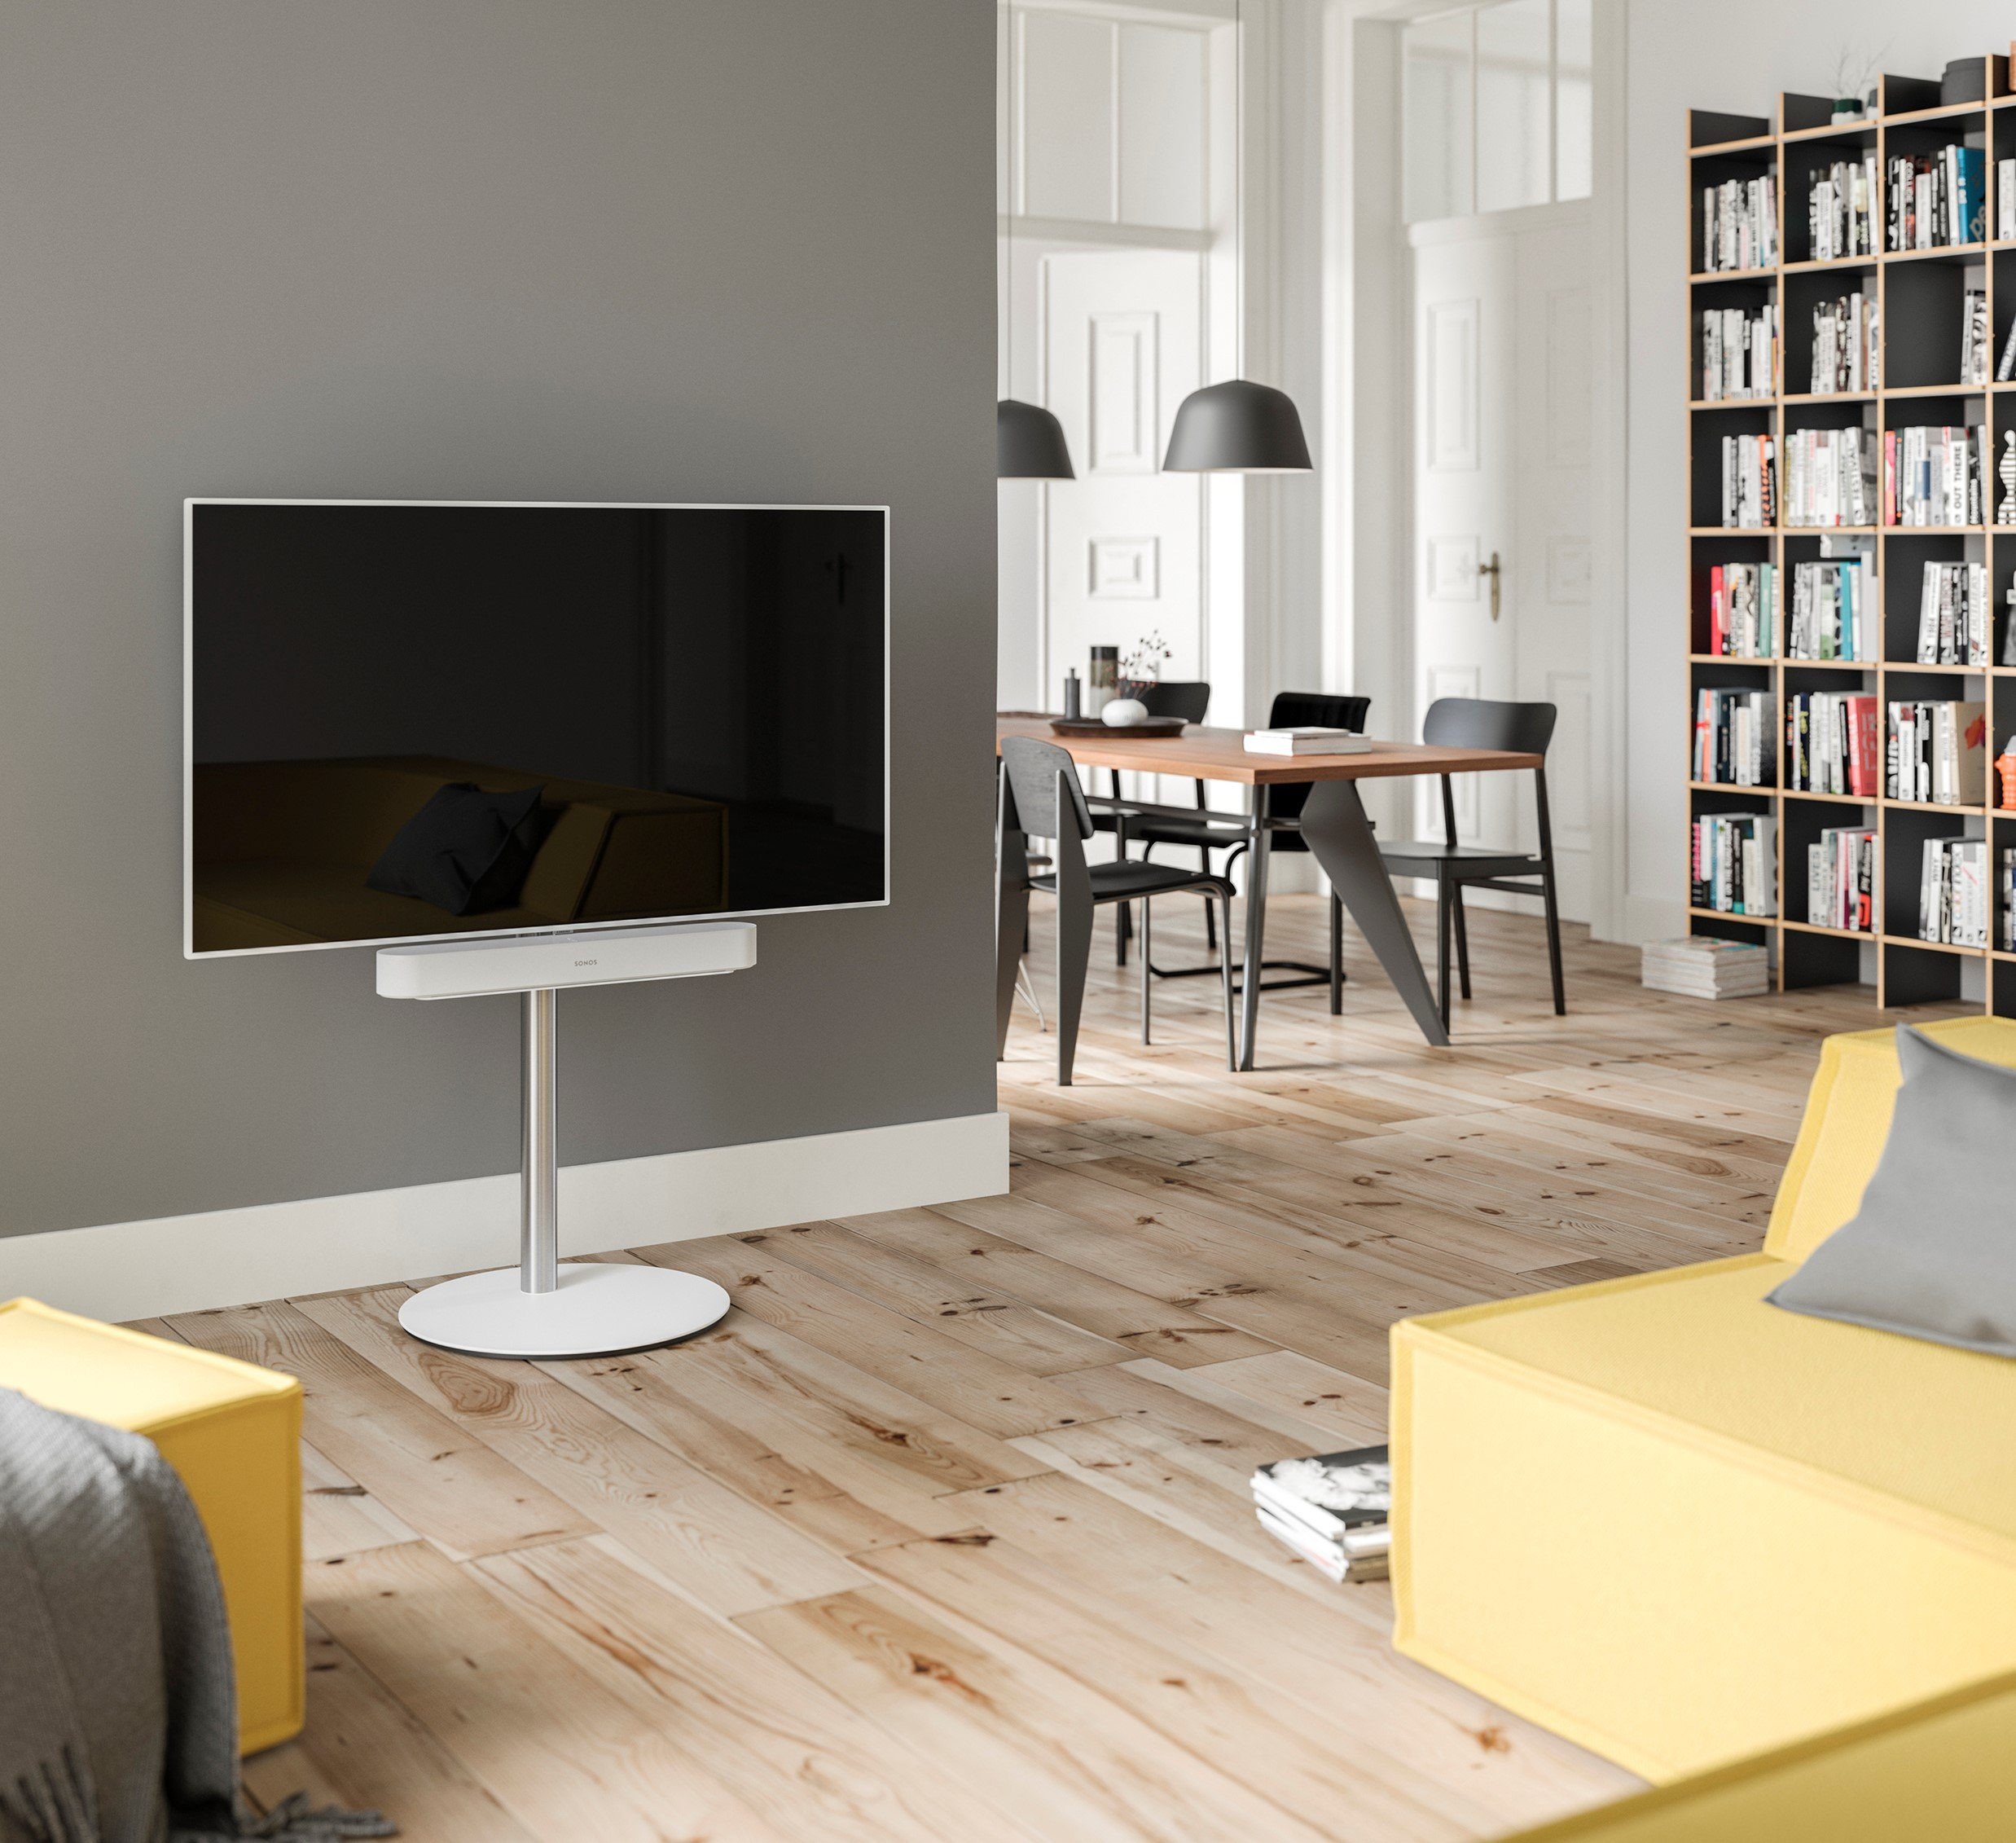 SPECTRAL Circle ist ein moderner wie auch edel anmutender TV-Stand mit drehbarer und höhenverstellbarer TV-Halterung. Stabile Sockelplatte aus Stahl mit satinierter Glasauflage. TV-Ständer, (für Bildschirme von 32'' bis 65) Snow